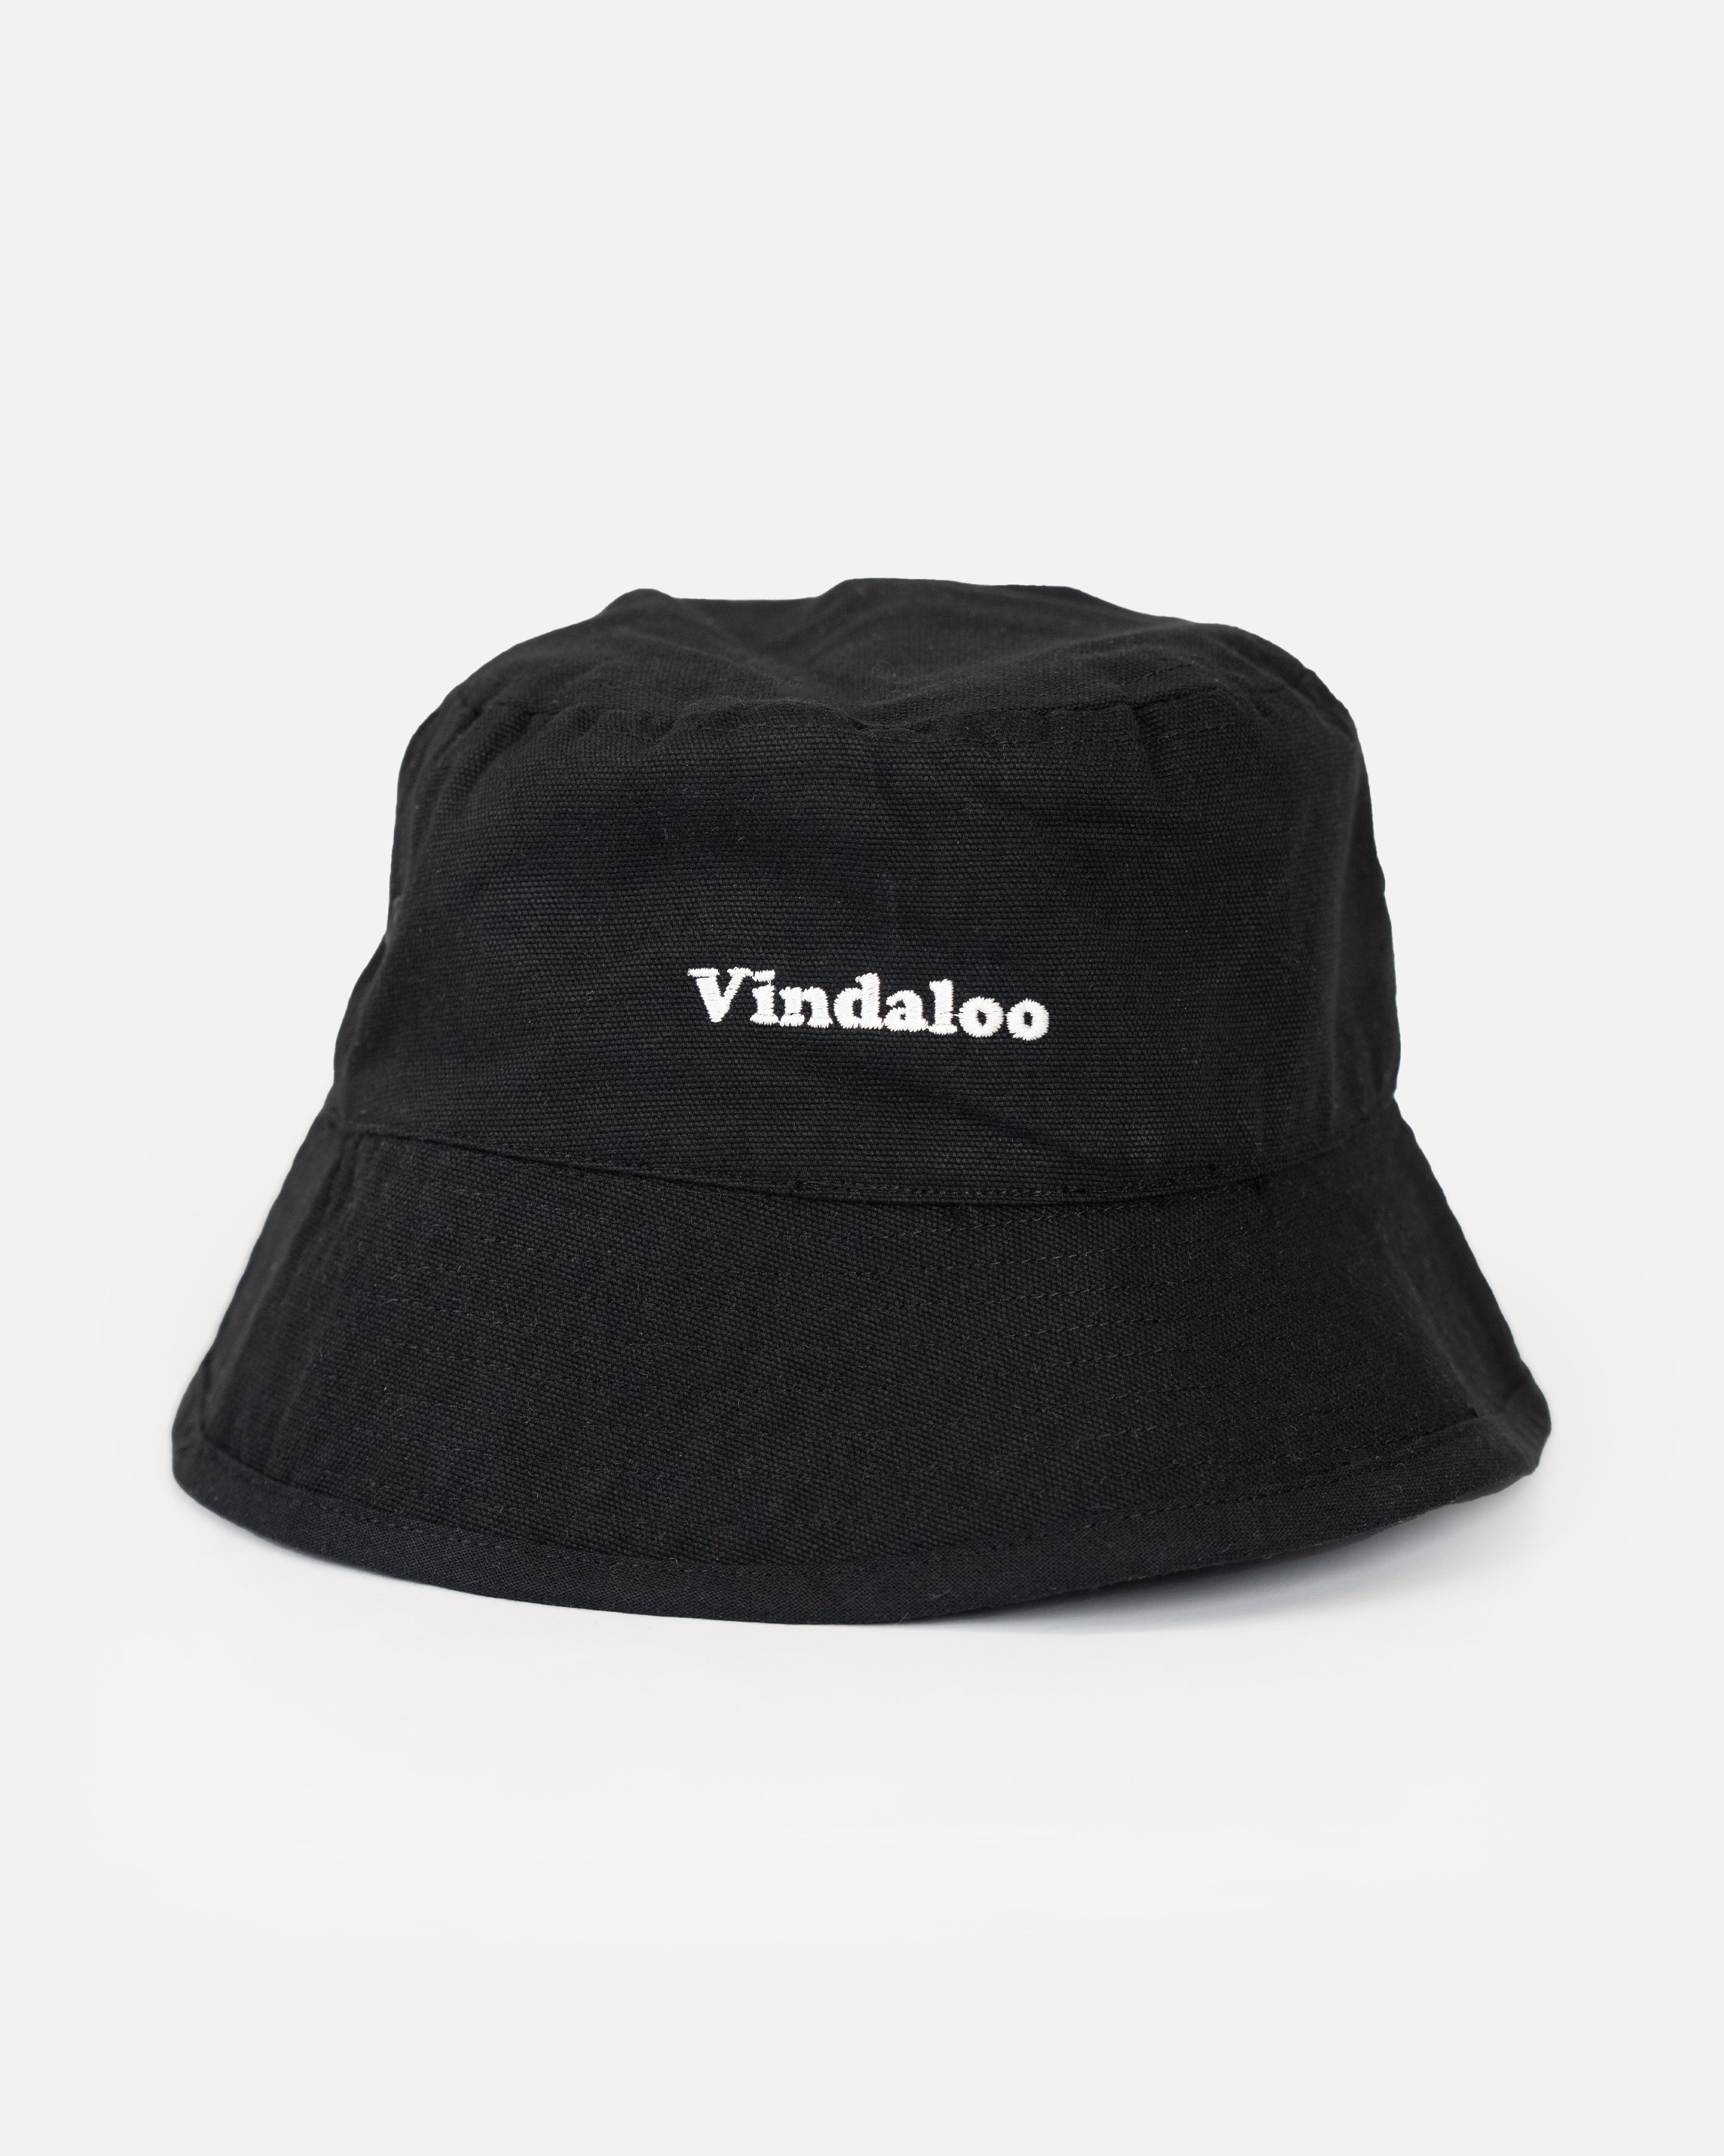 Vindaloo - Embroidered Bucket Hat